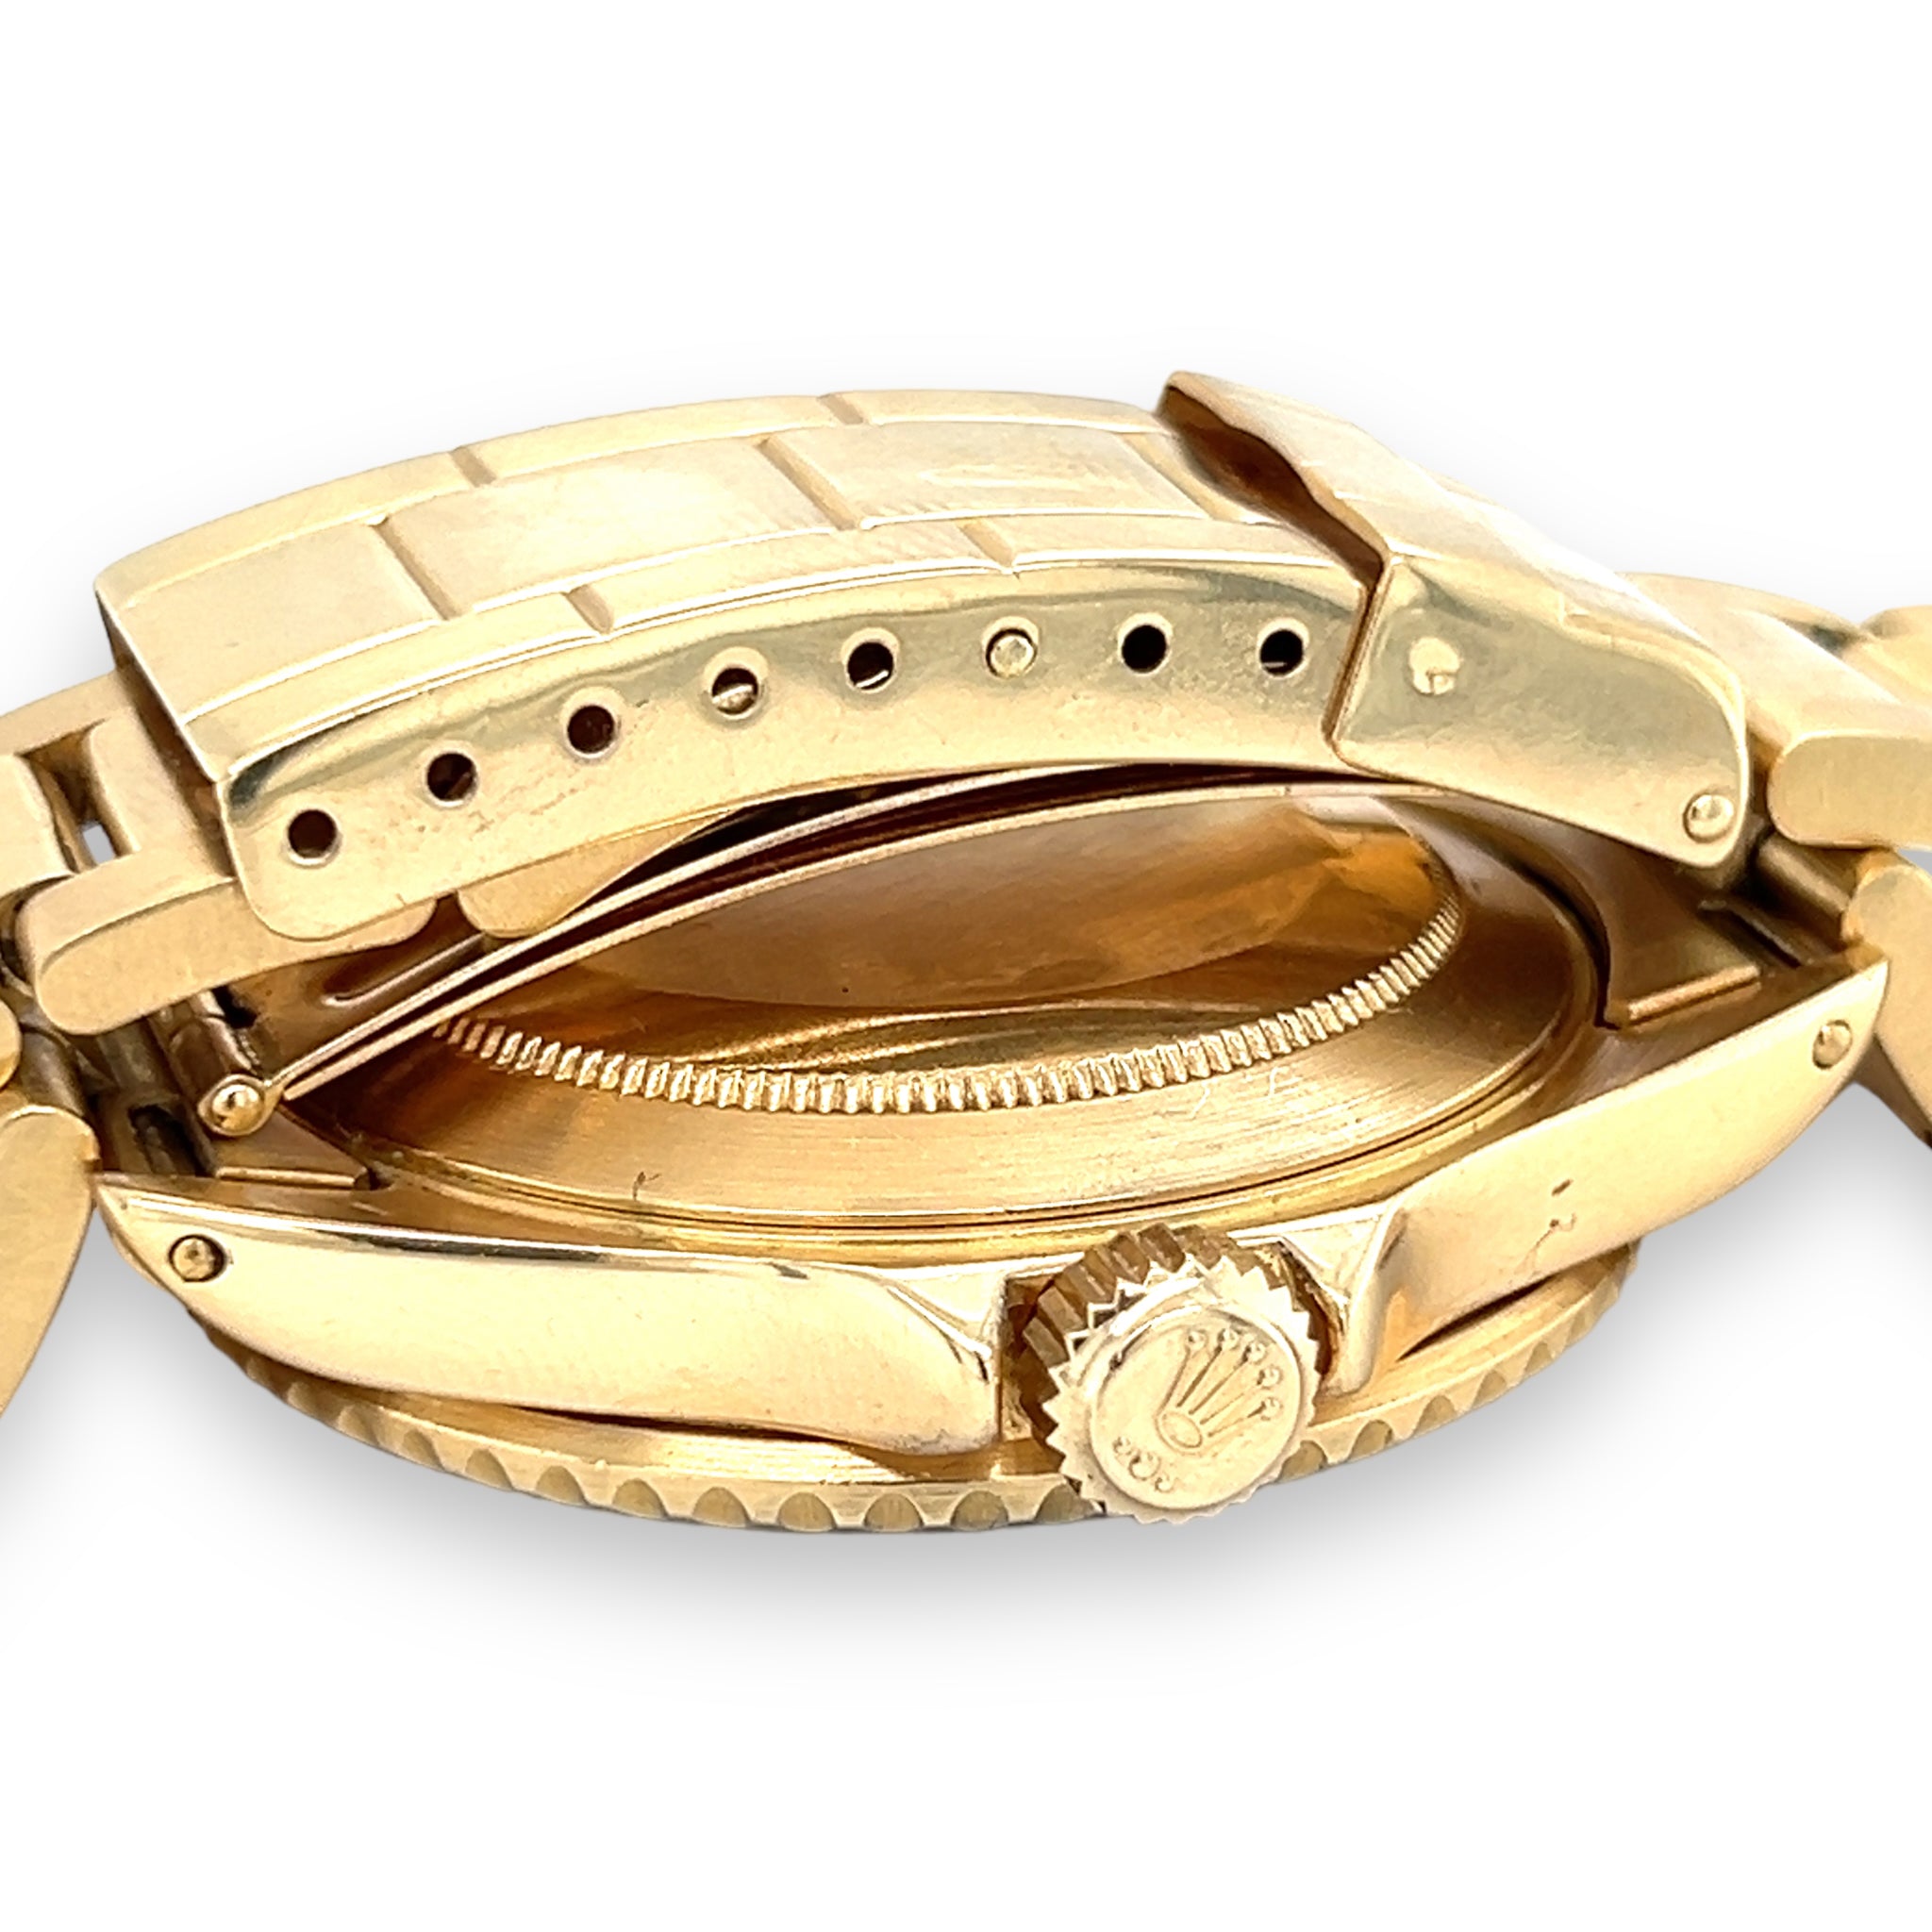 Rolex Submariner Date 18ct Gold, 16808 - Wildsmith Jewellery